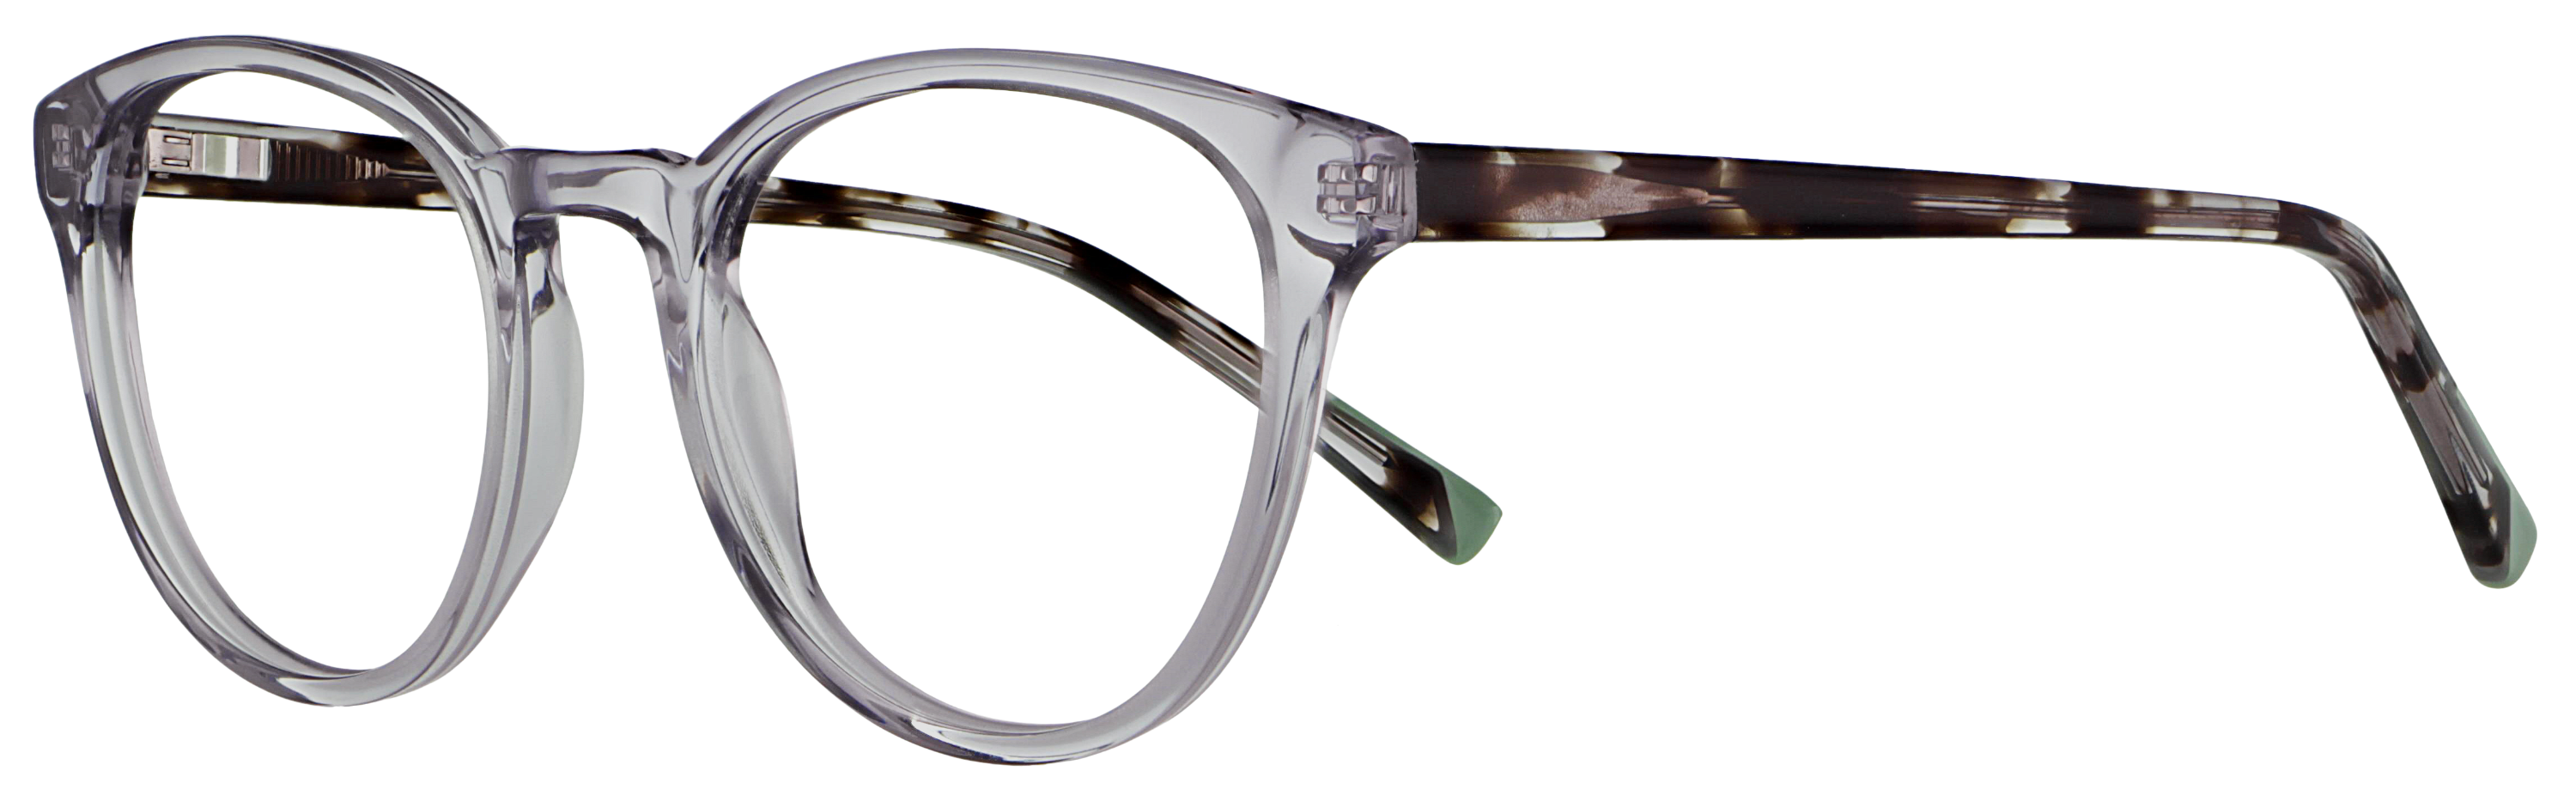 Das Bild zeigt die Korrektionsbrille 140341 von der Marke Abele Optik in grau transparent.